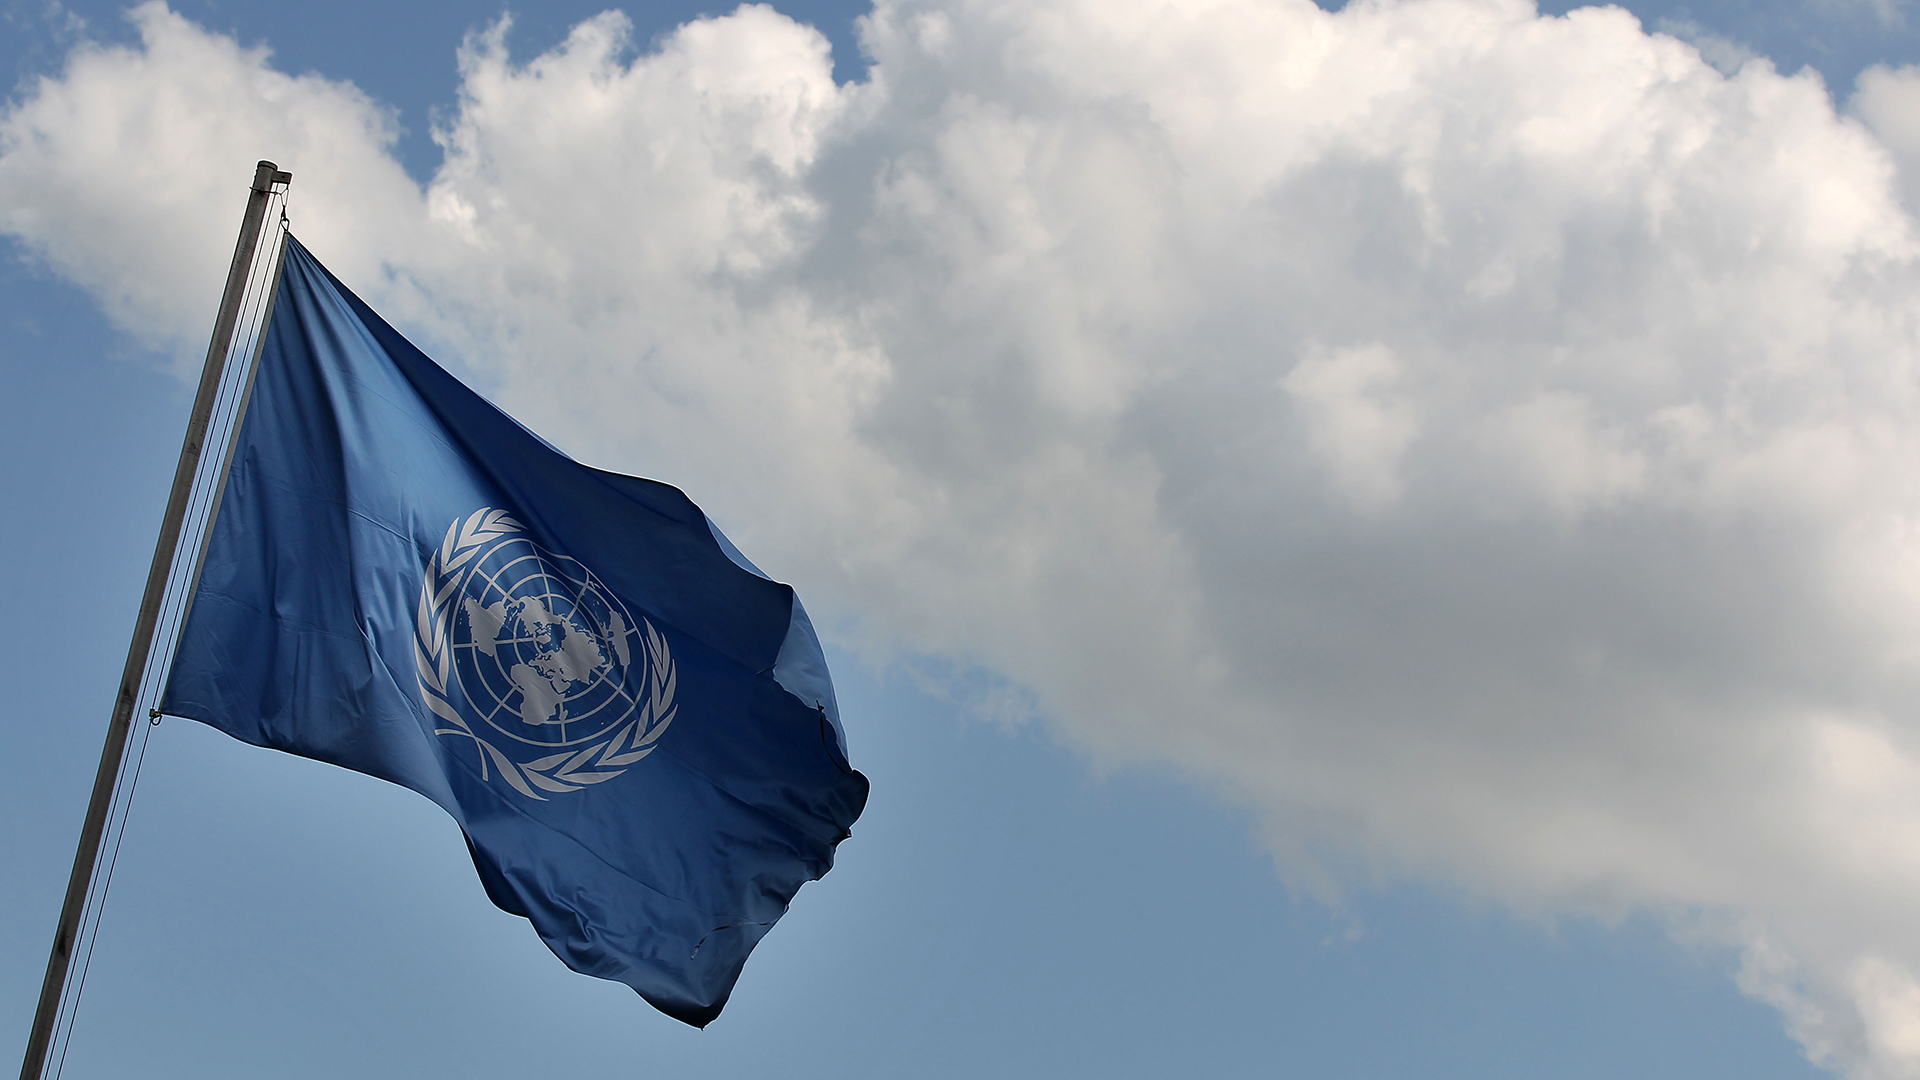 Blaue Fahne mit UN-Logo | picture alliance / dpa